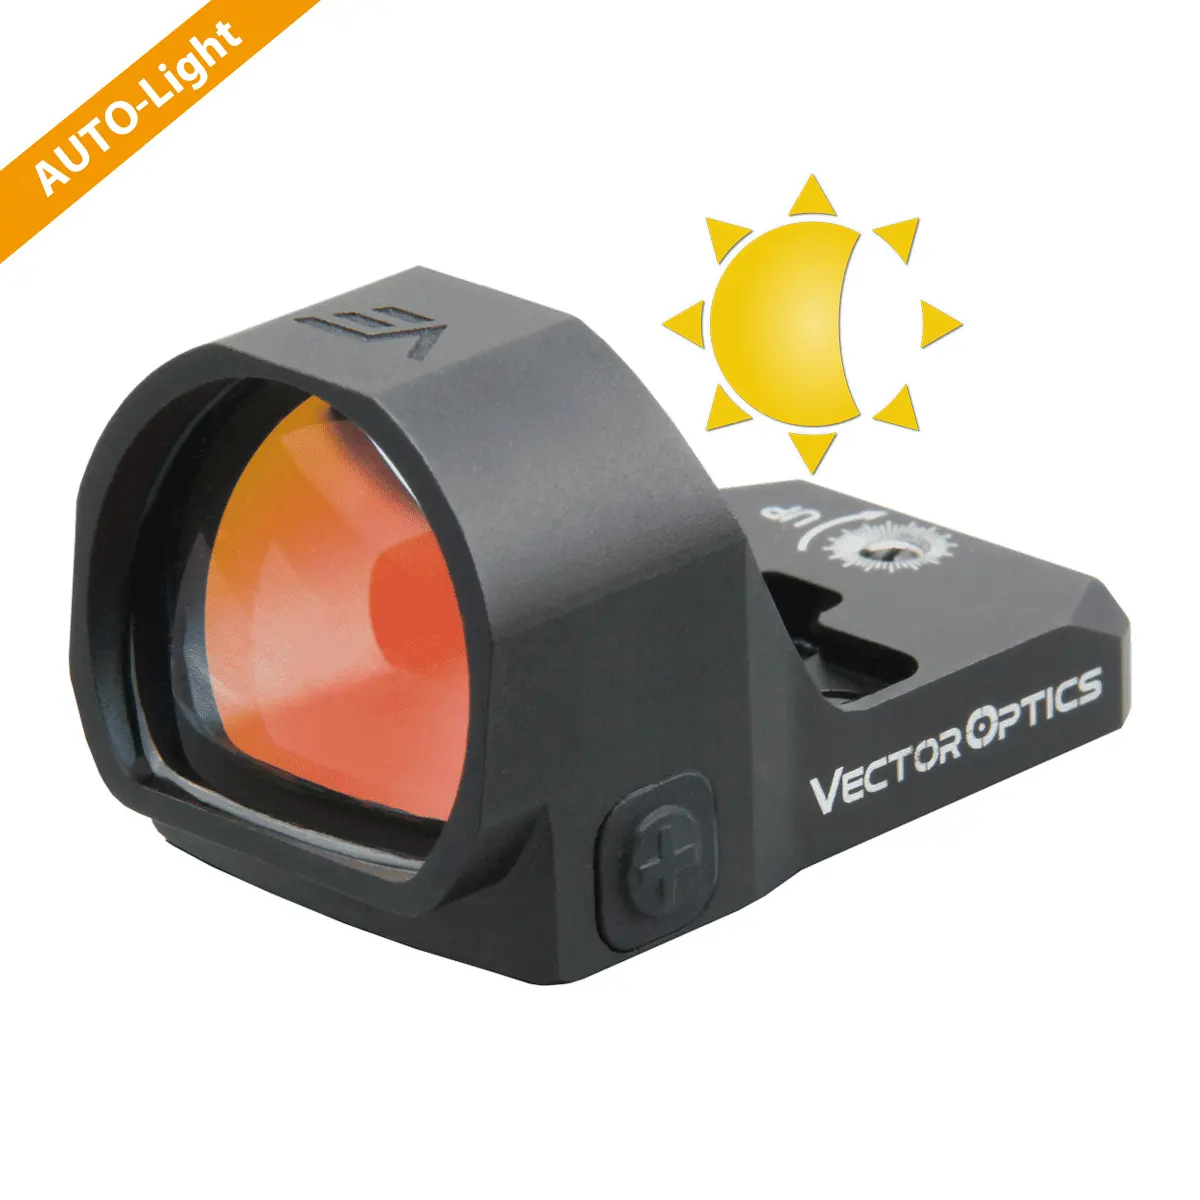 OEM nhà sản xuất bán buôn Vector quang học Red Dot Sight với tự điều chỉnh ánh sáng tự động cảm biến độ sáng